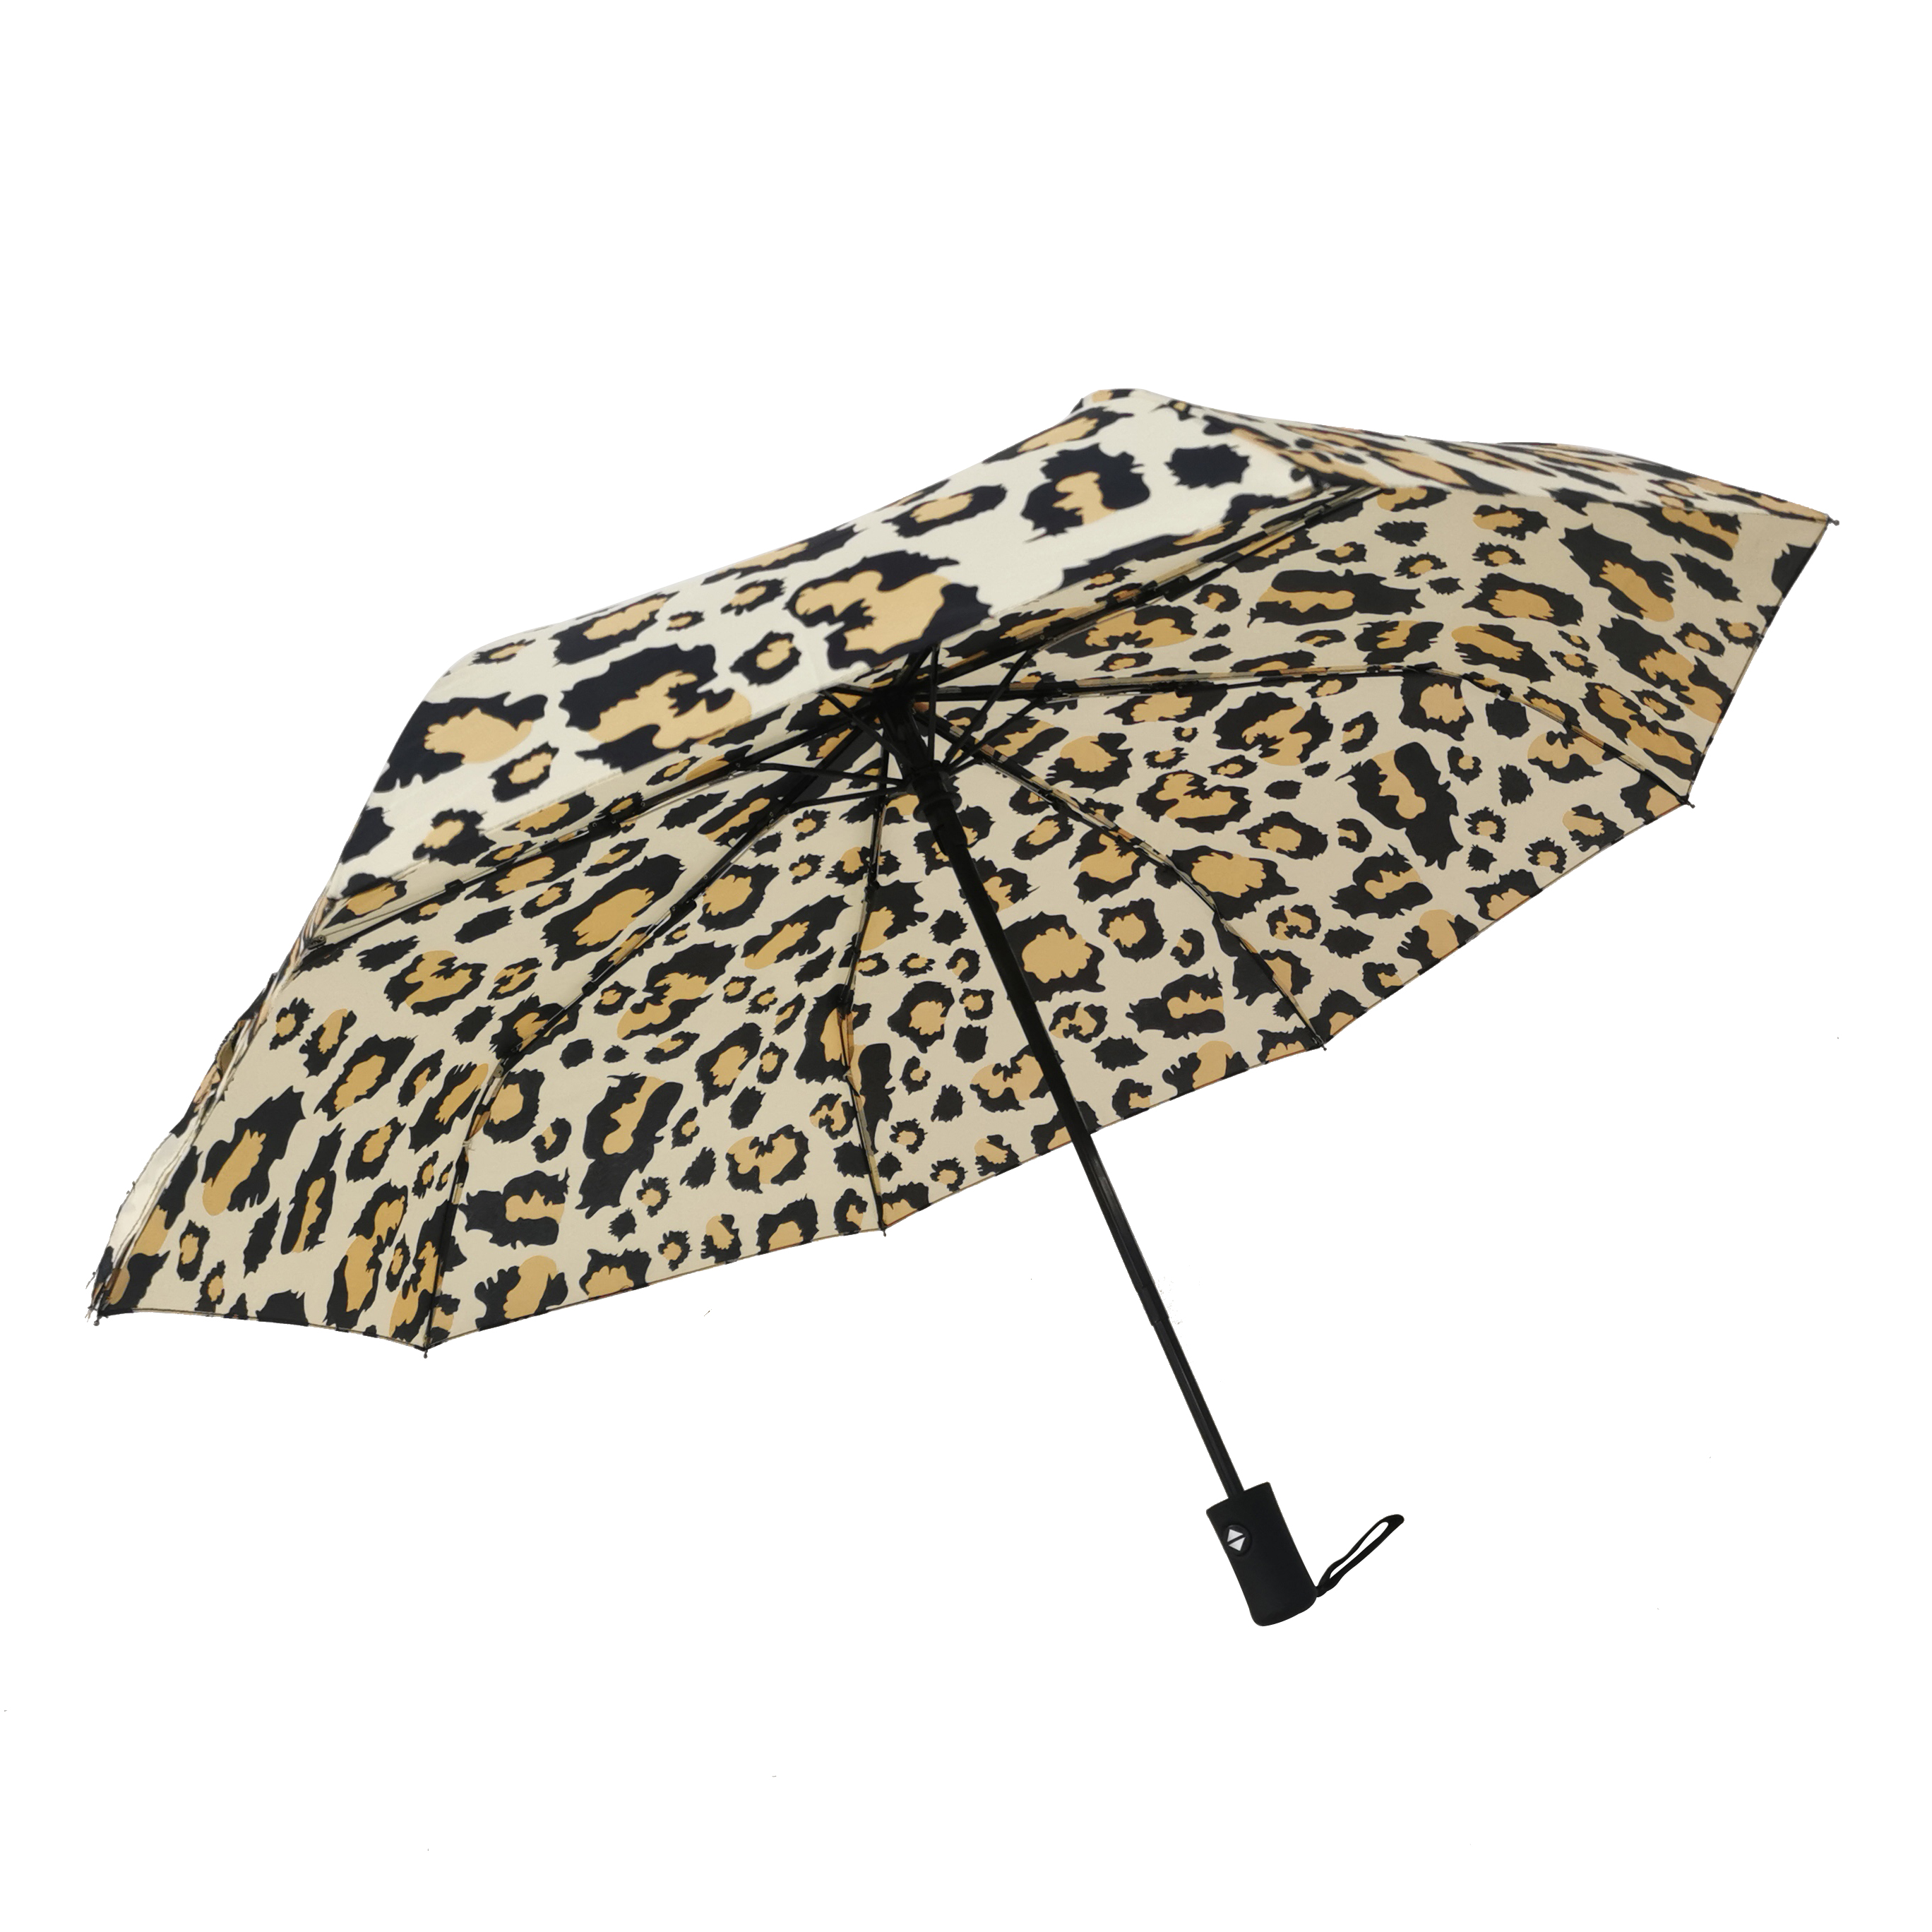 https://www.hodaumbrella.com/ultra-low-pric…lding-umbrella-product/ ‎